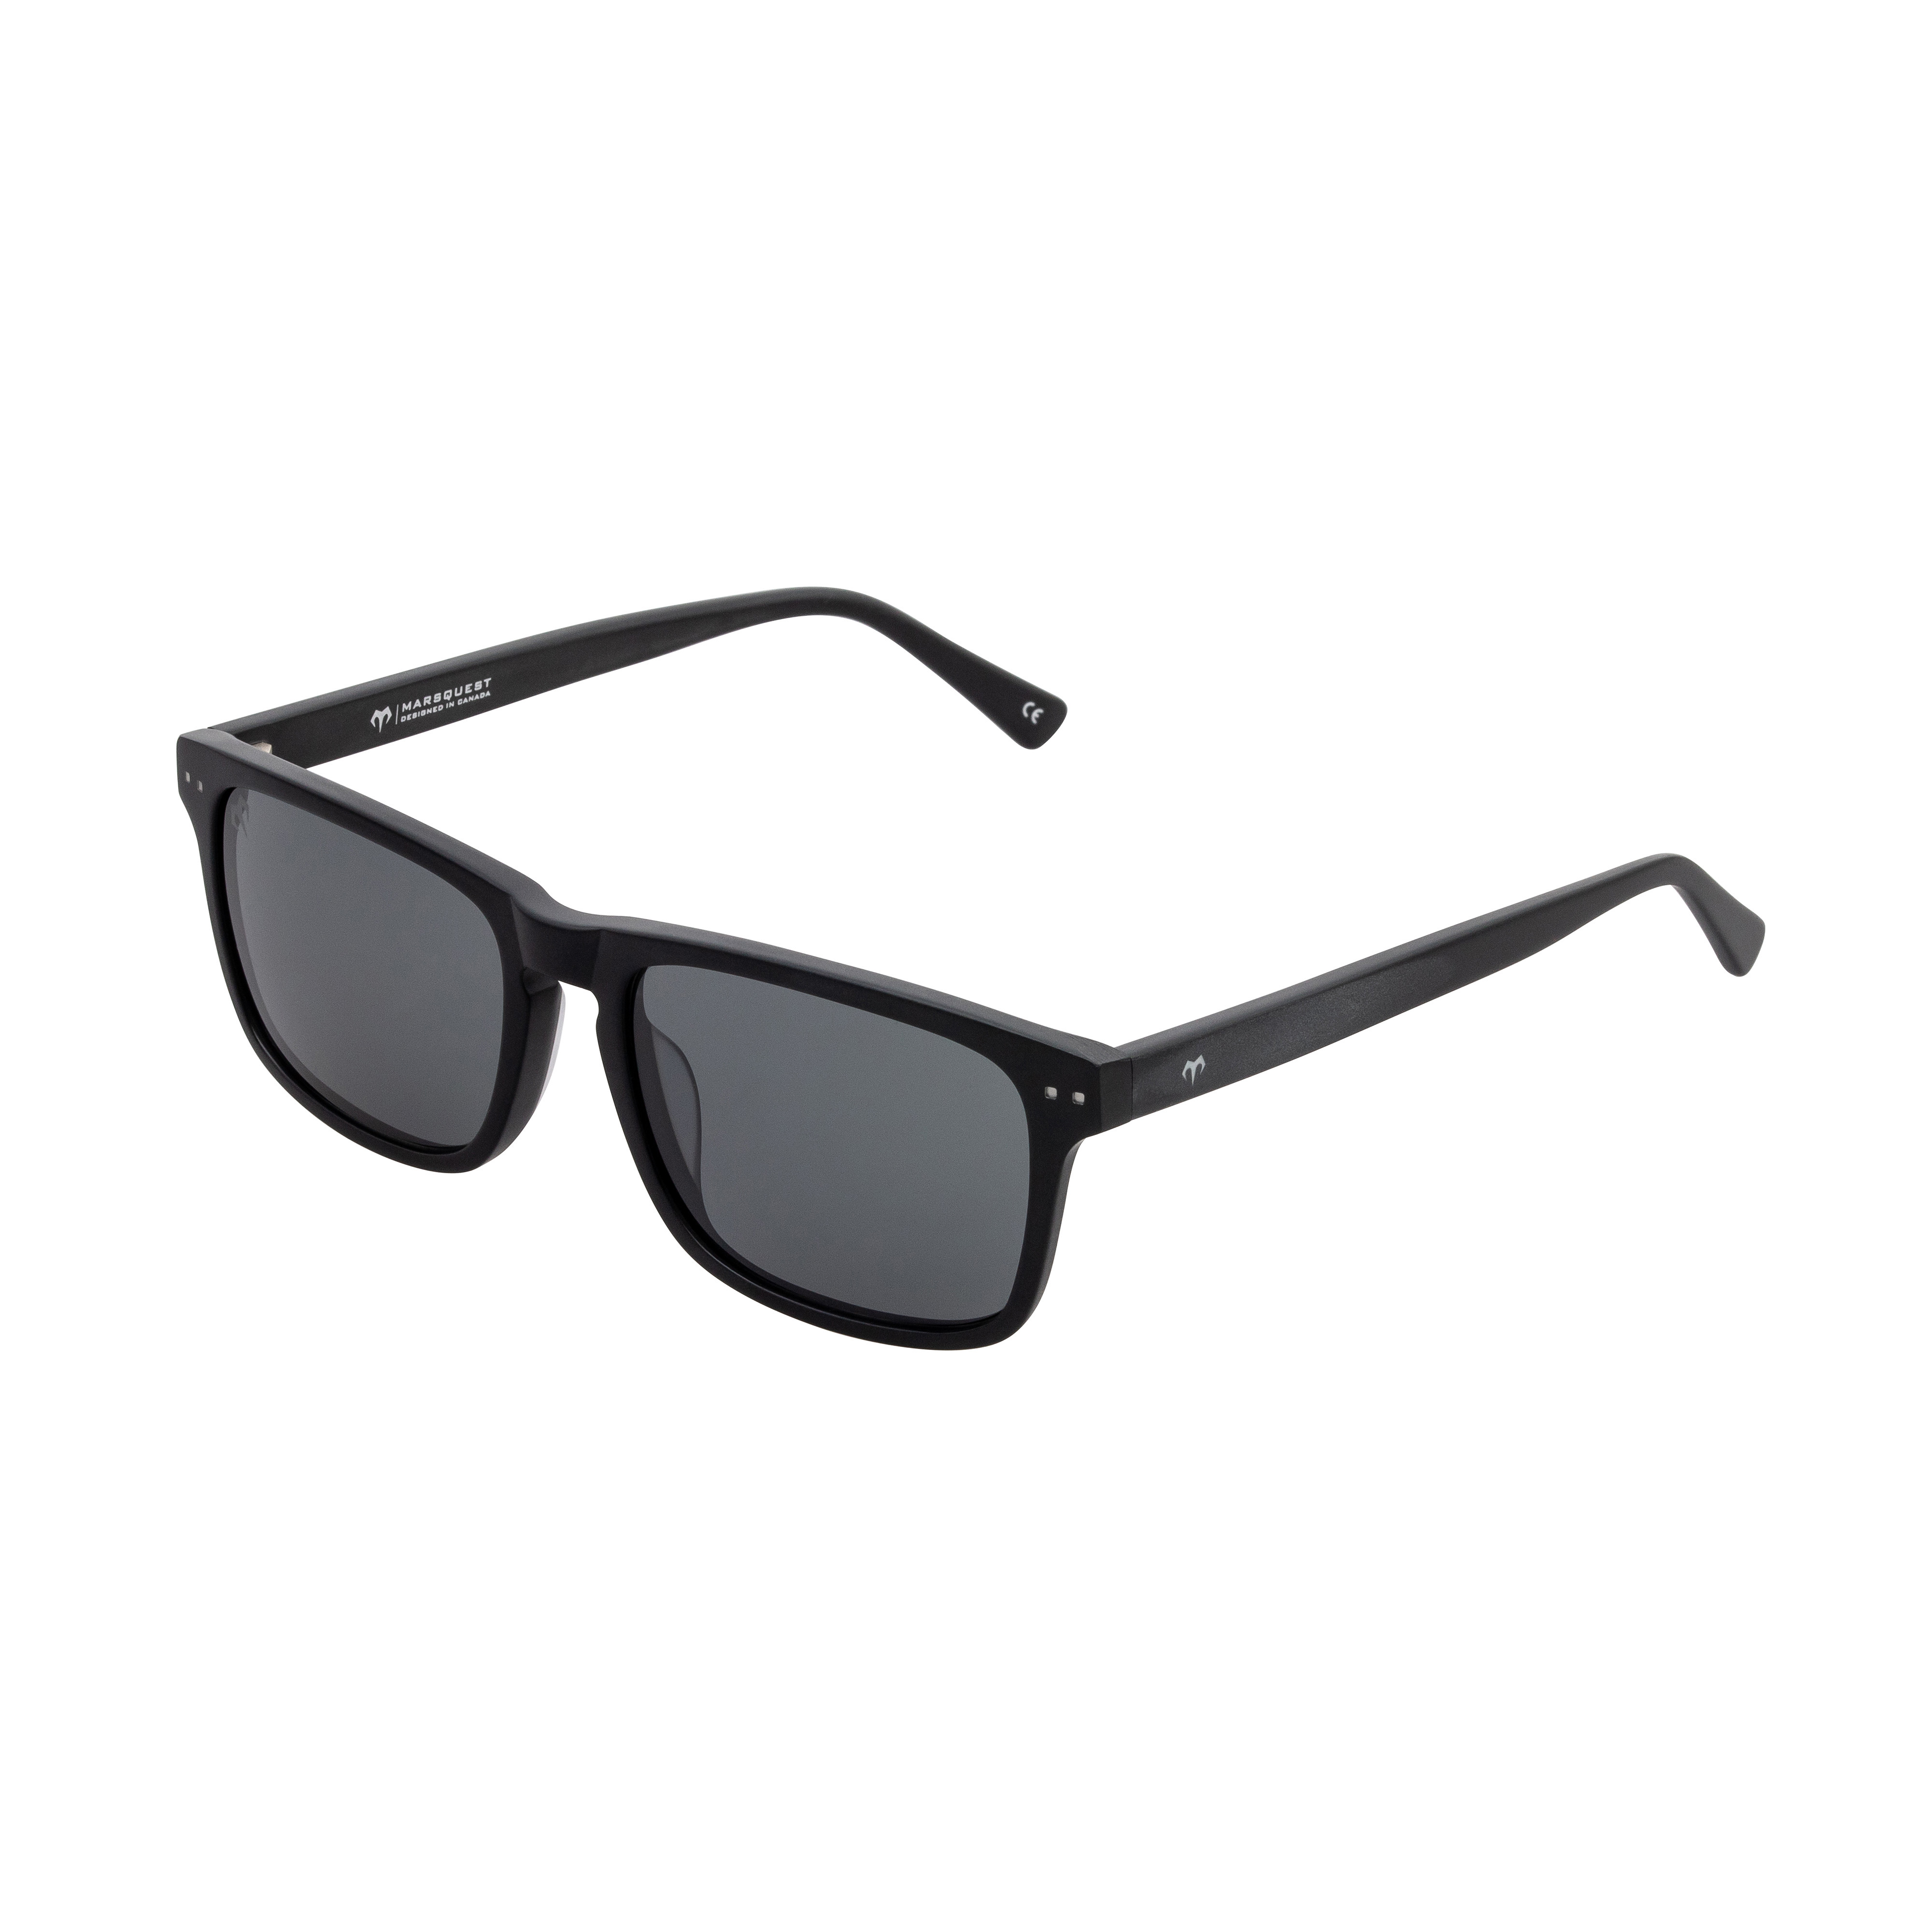 MarsQuest - Limited Edition Polarized Sunglasses